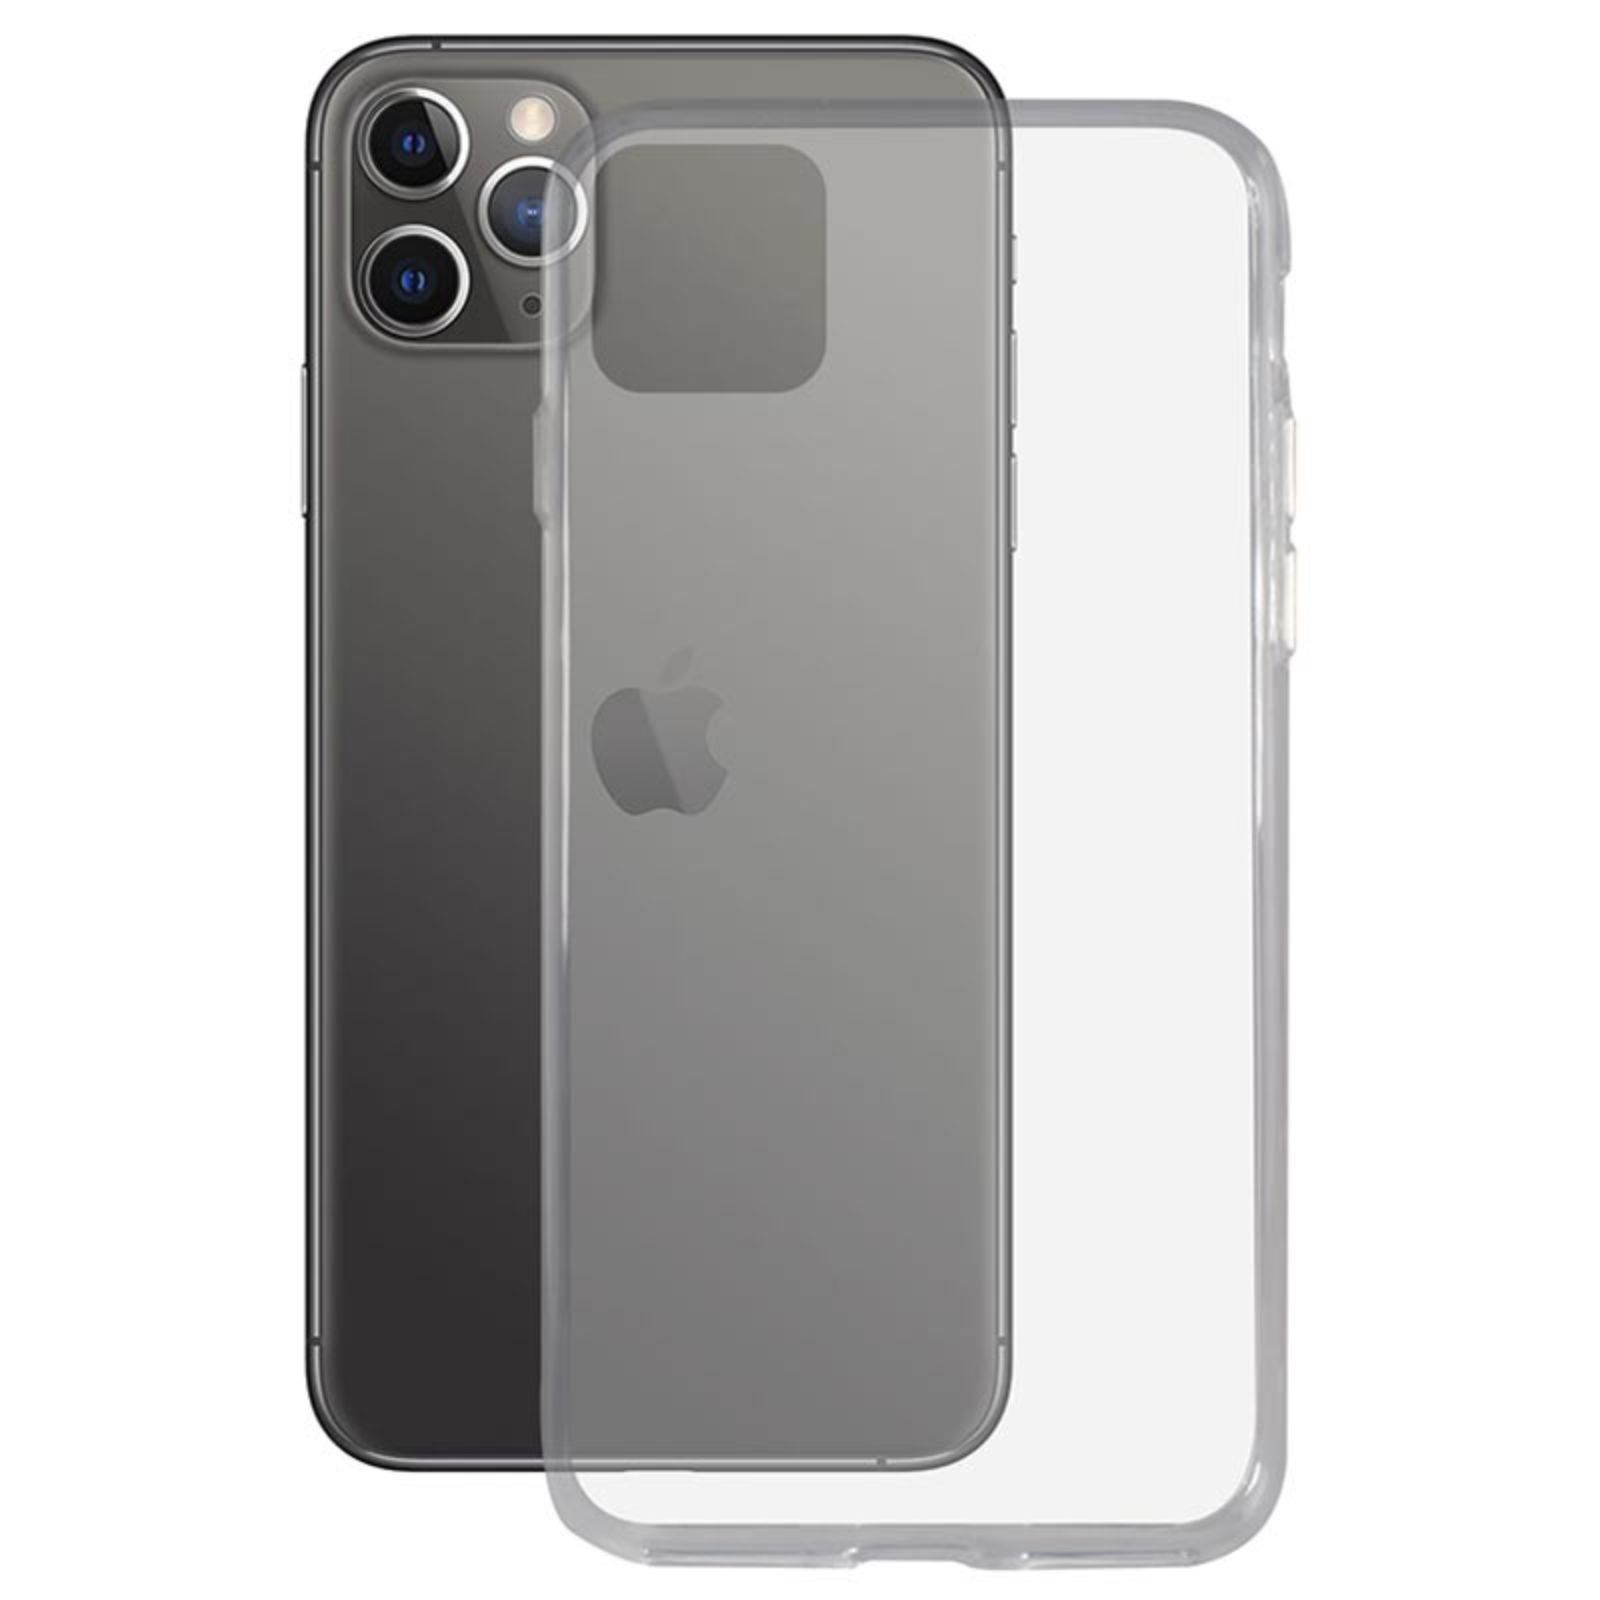 Case Funda iPhone 7 8G Transparente + Aro Sujetador – ATP SHOP